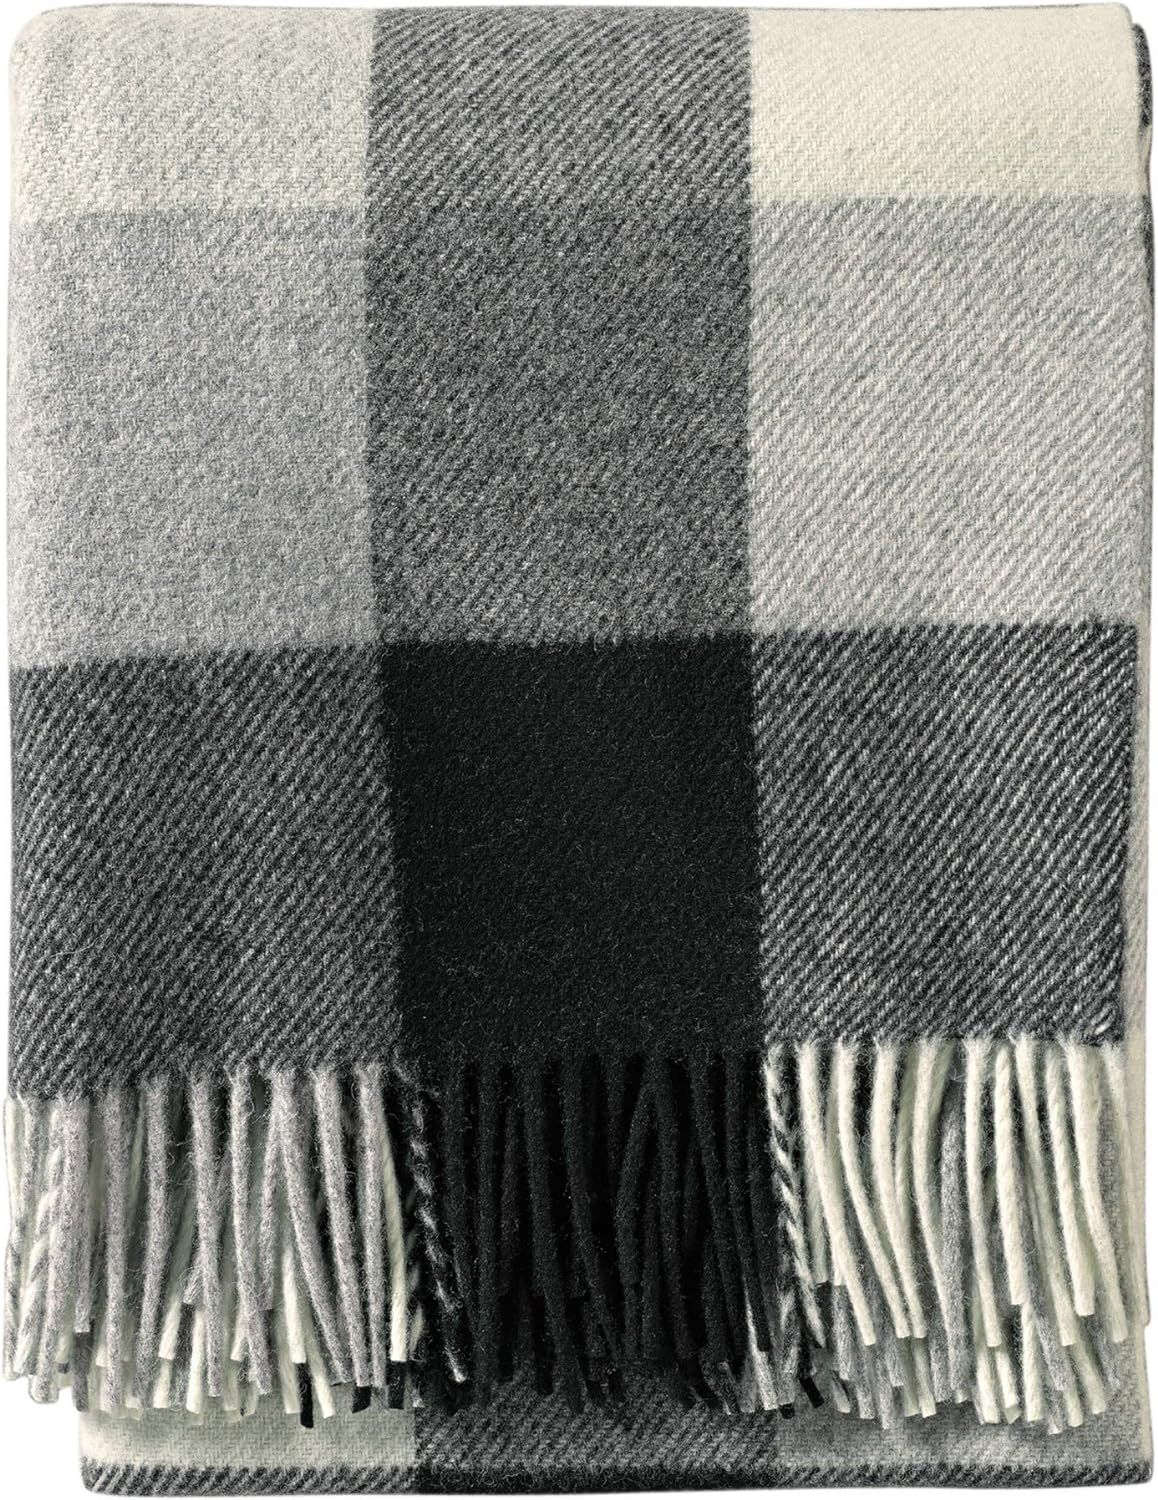 Pendleton, Eco-Wise Washable Wool Throw with Fringe, Black / Ivory | Amazon (US)